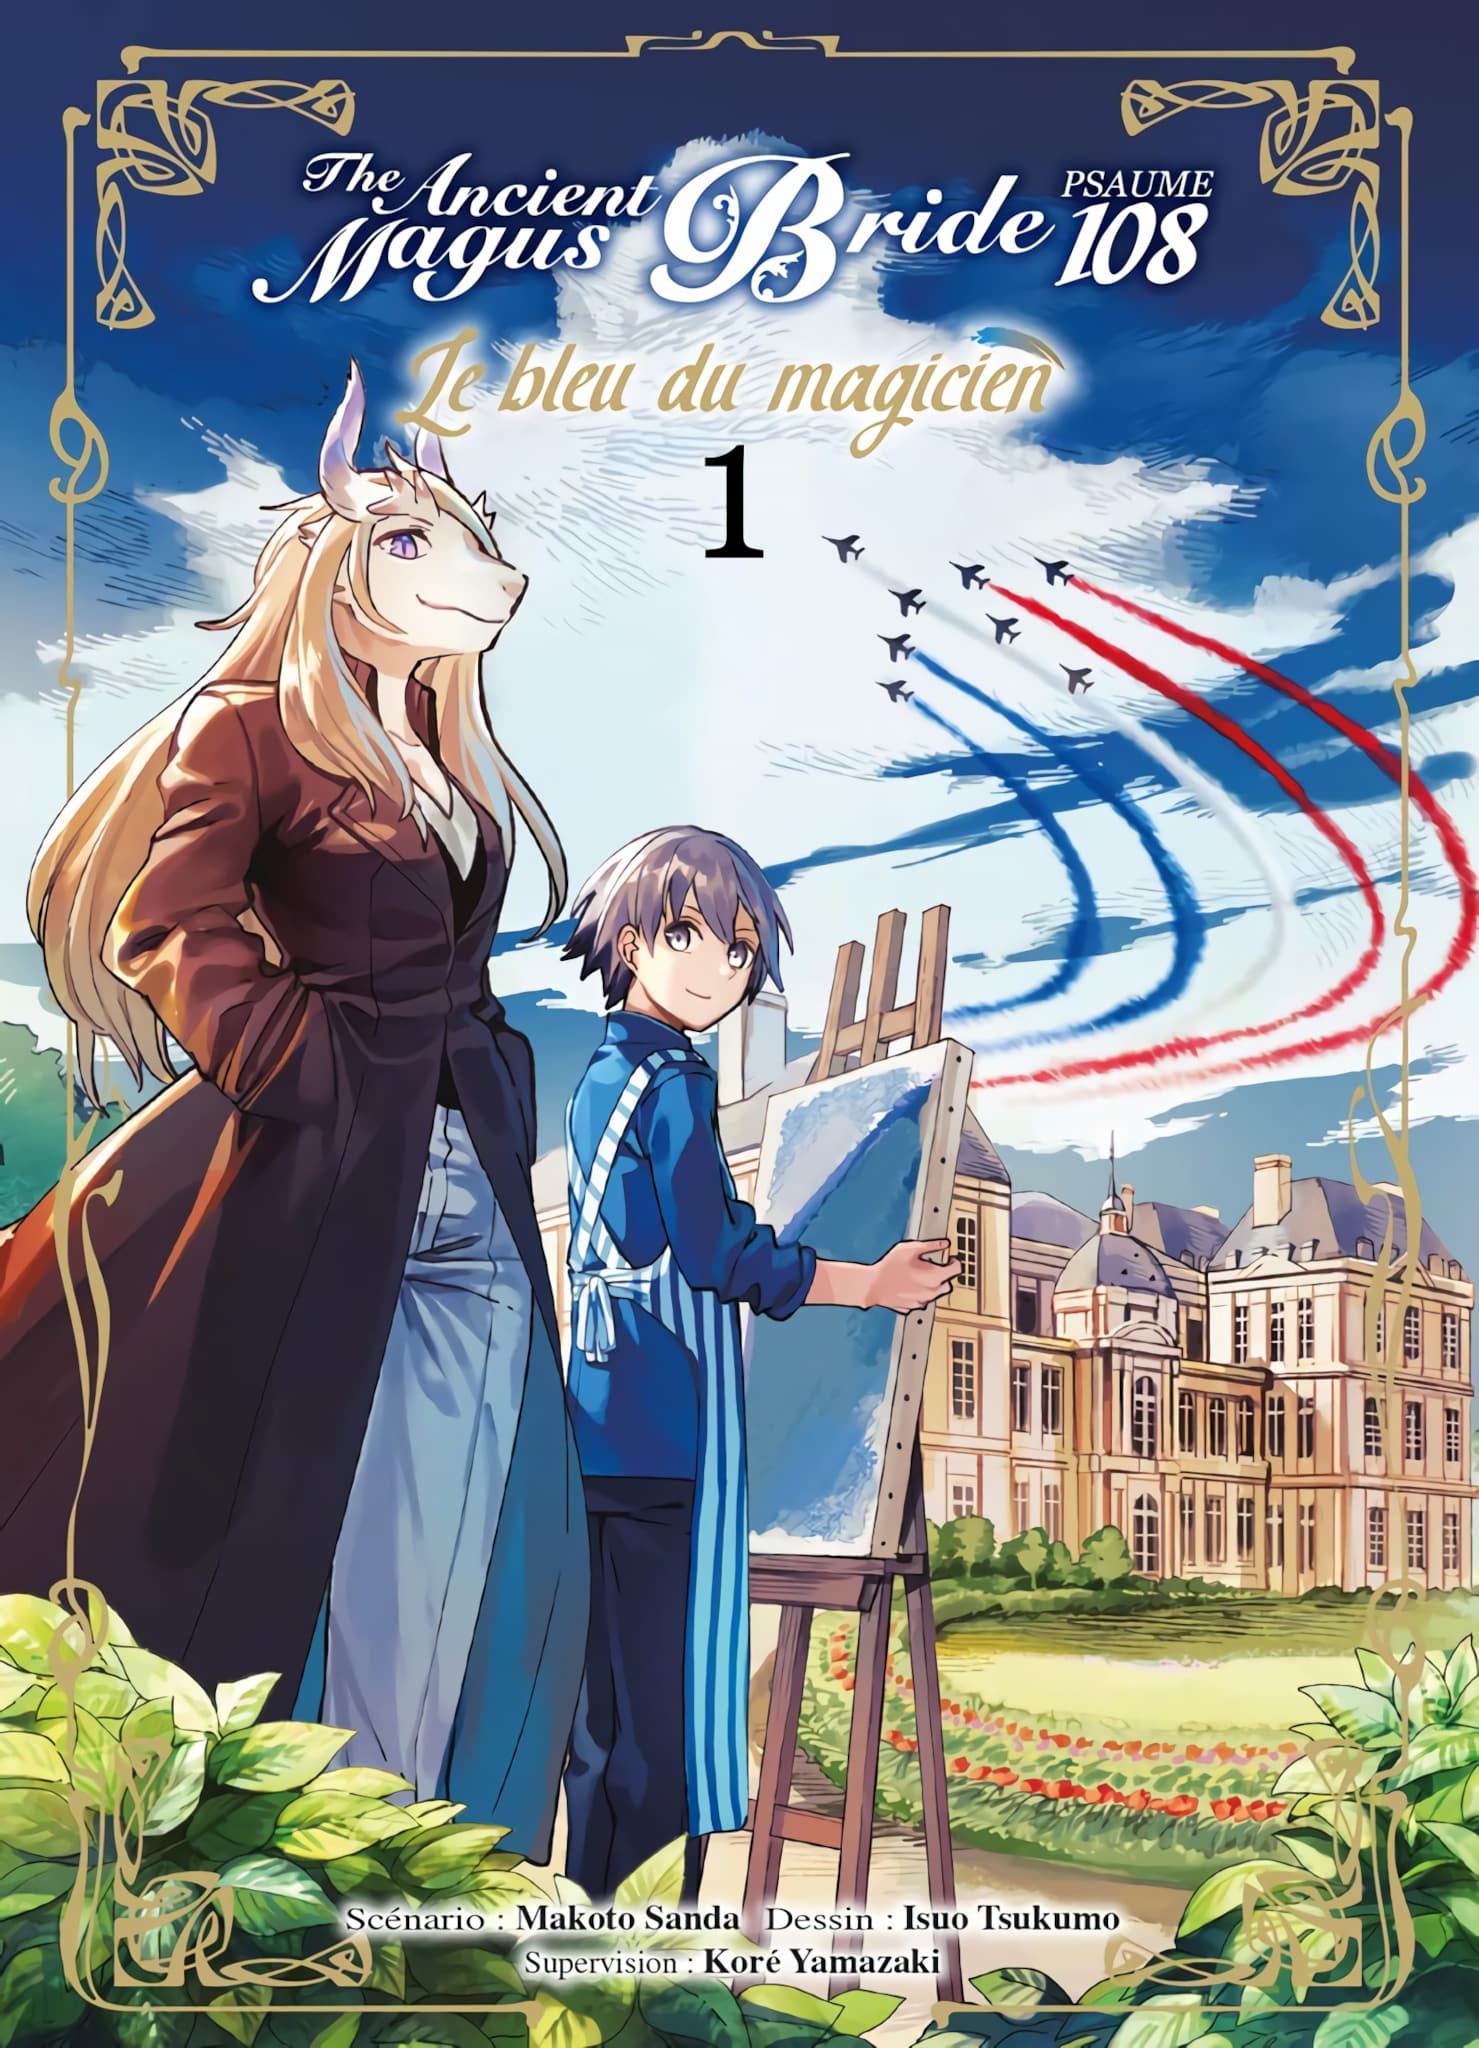 Tome 1 du manga The Ancient Magus Bride Psaume 108 : Le Bleu du magicien